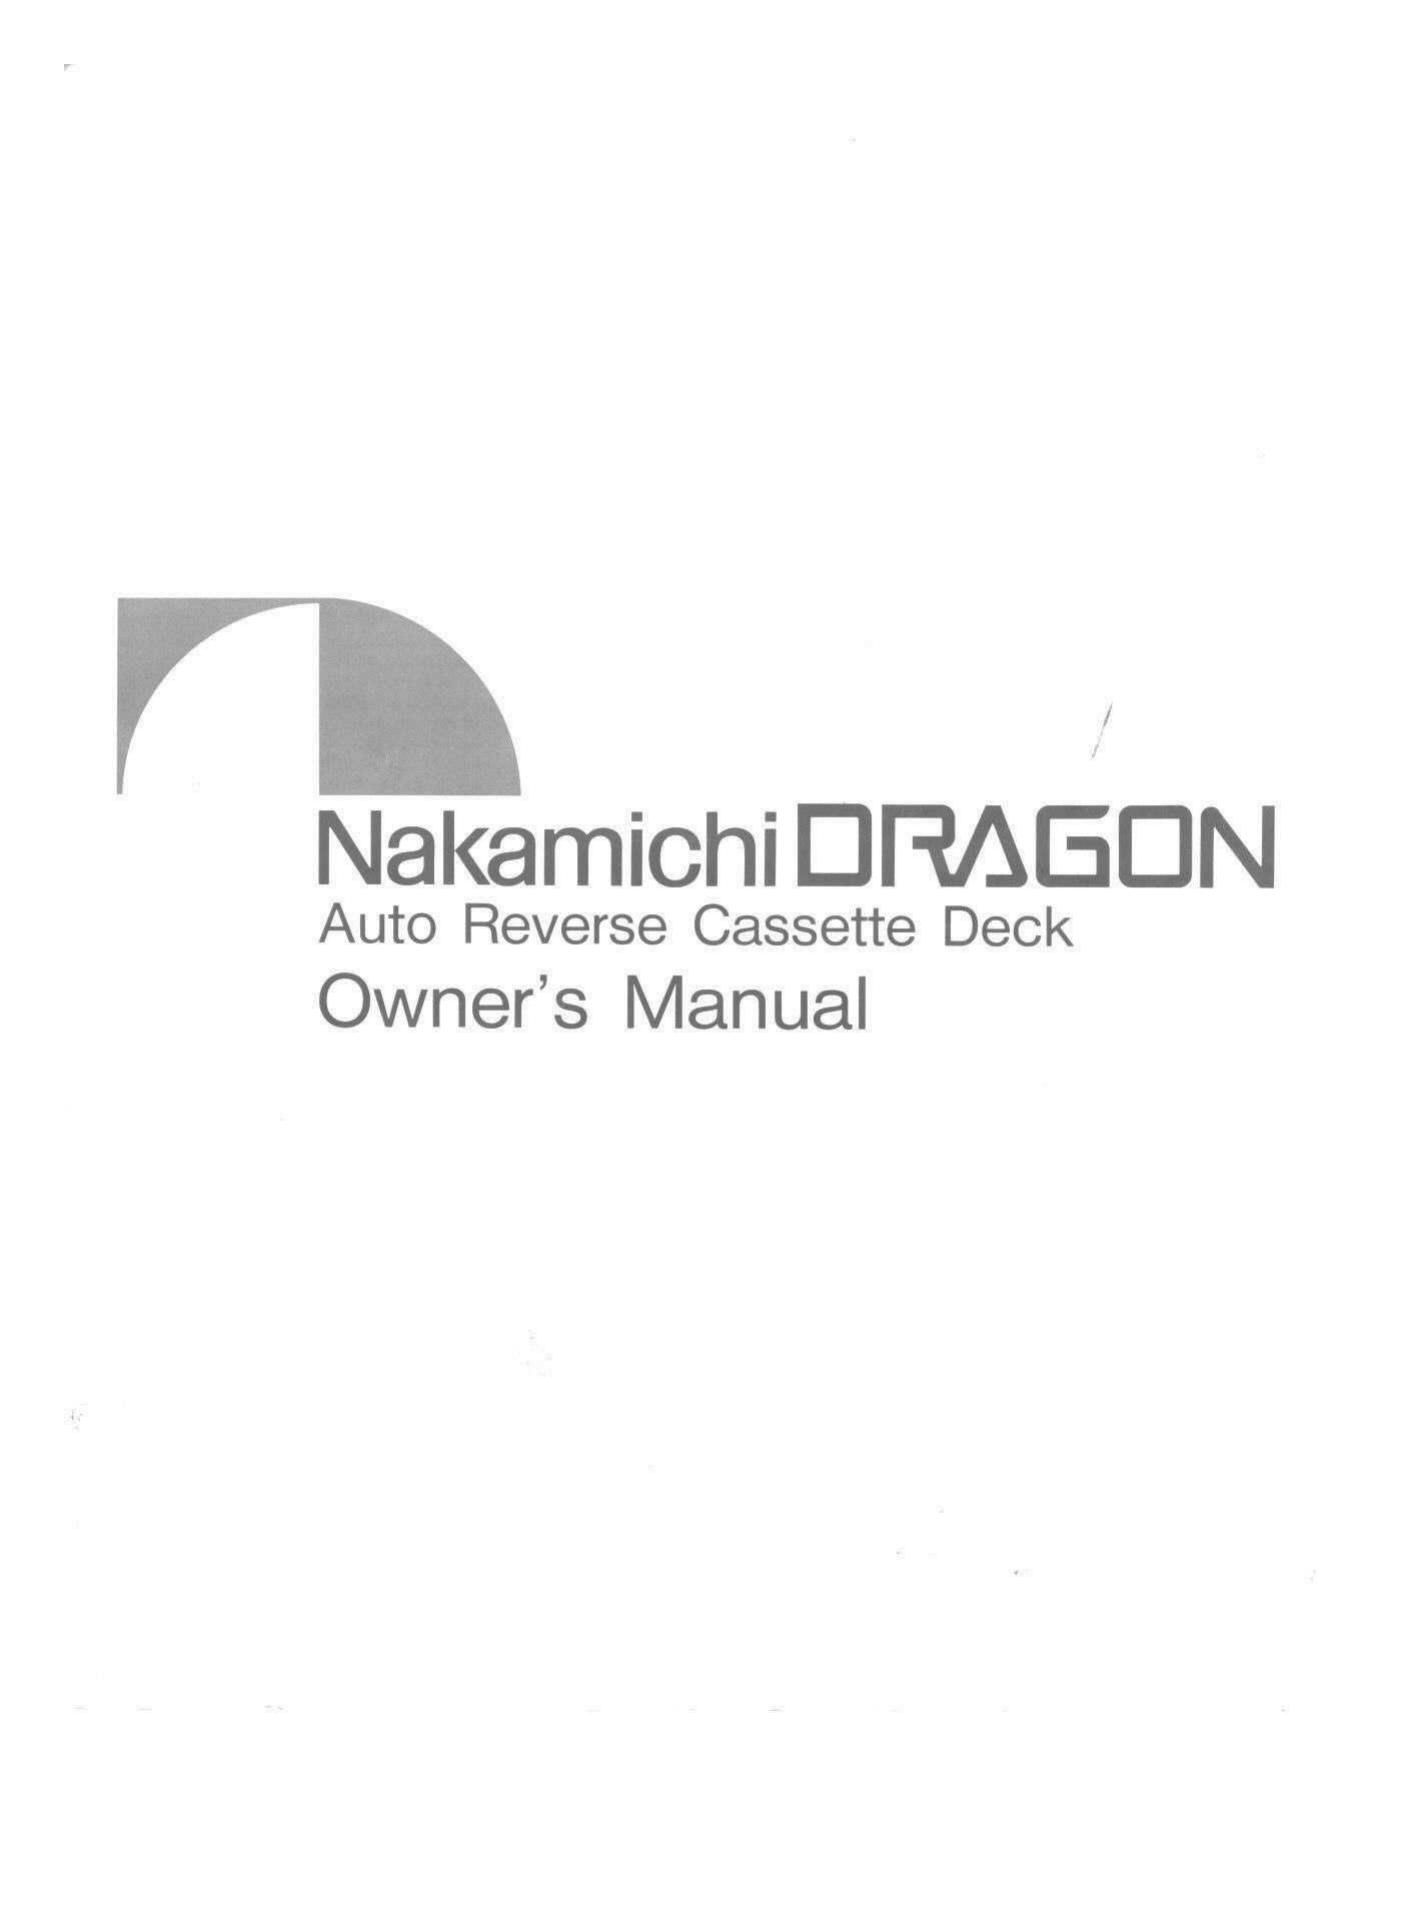 Nakamichi Dragon Owners Manual